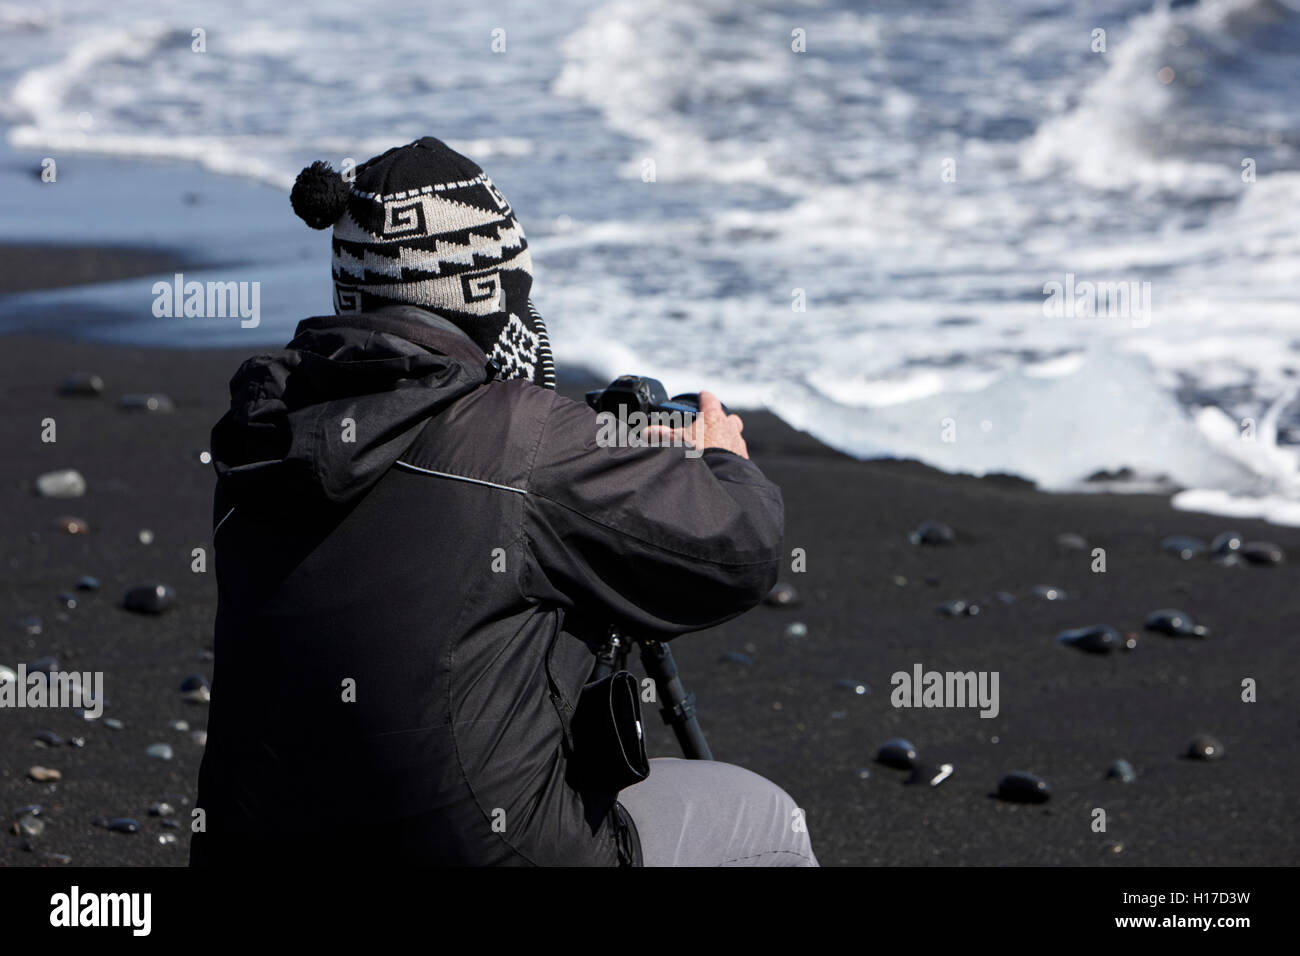 Photographe à prendre des photos de glace échoués sur la plage de sable noir à l'islande jokulsarlon Banque D'Images